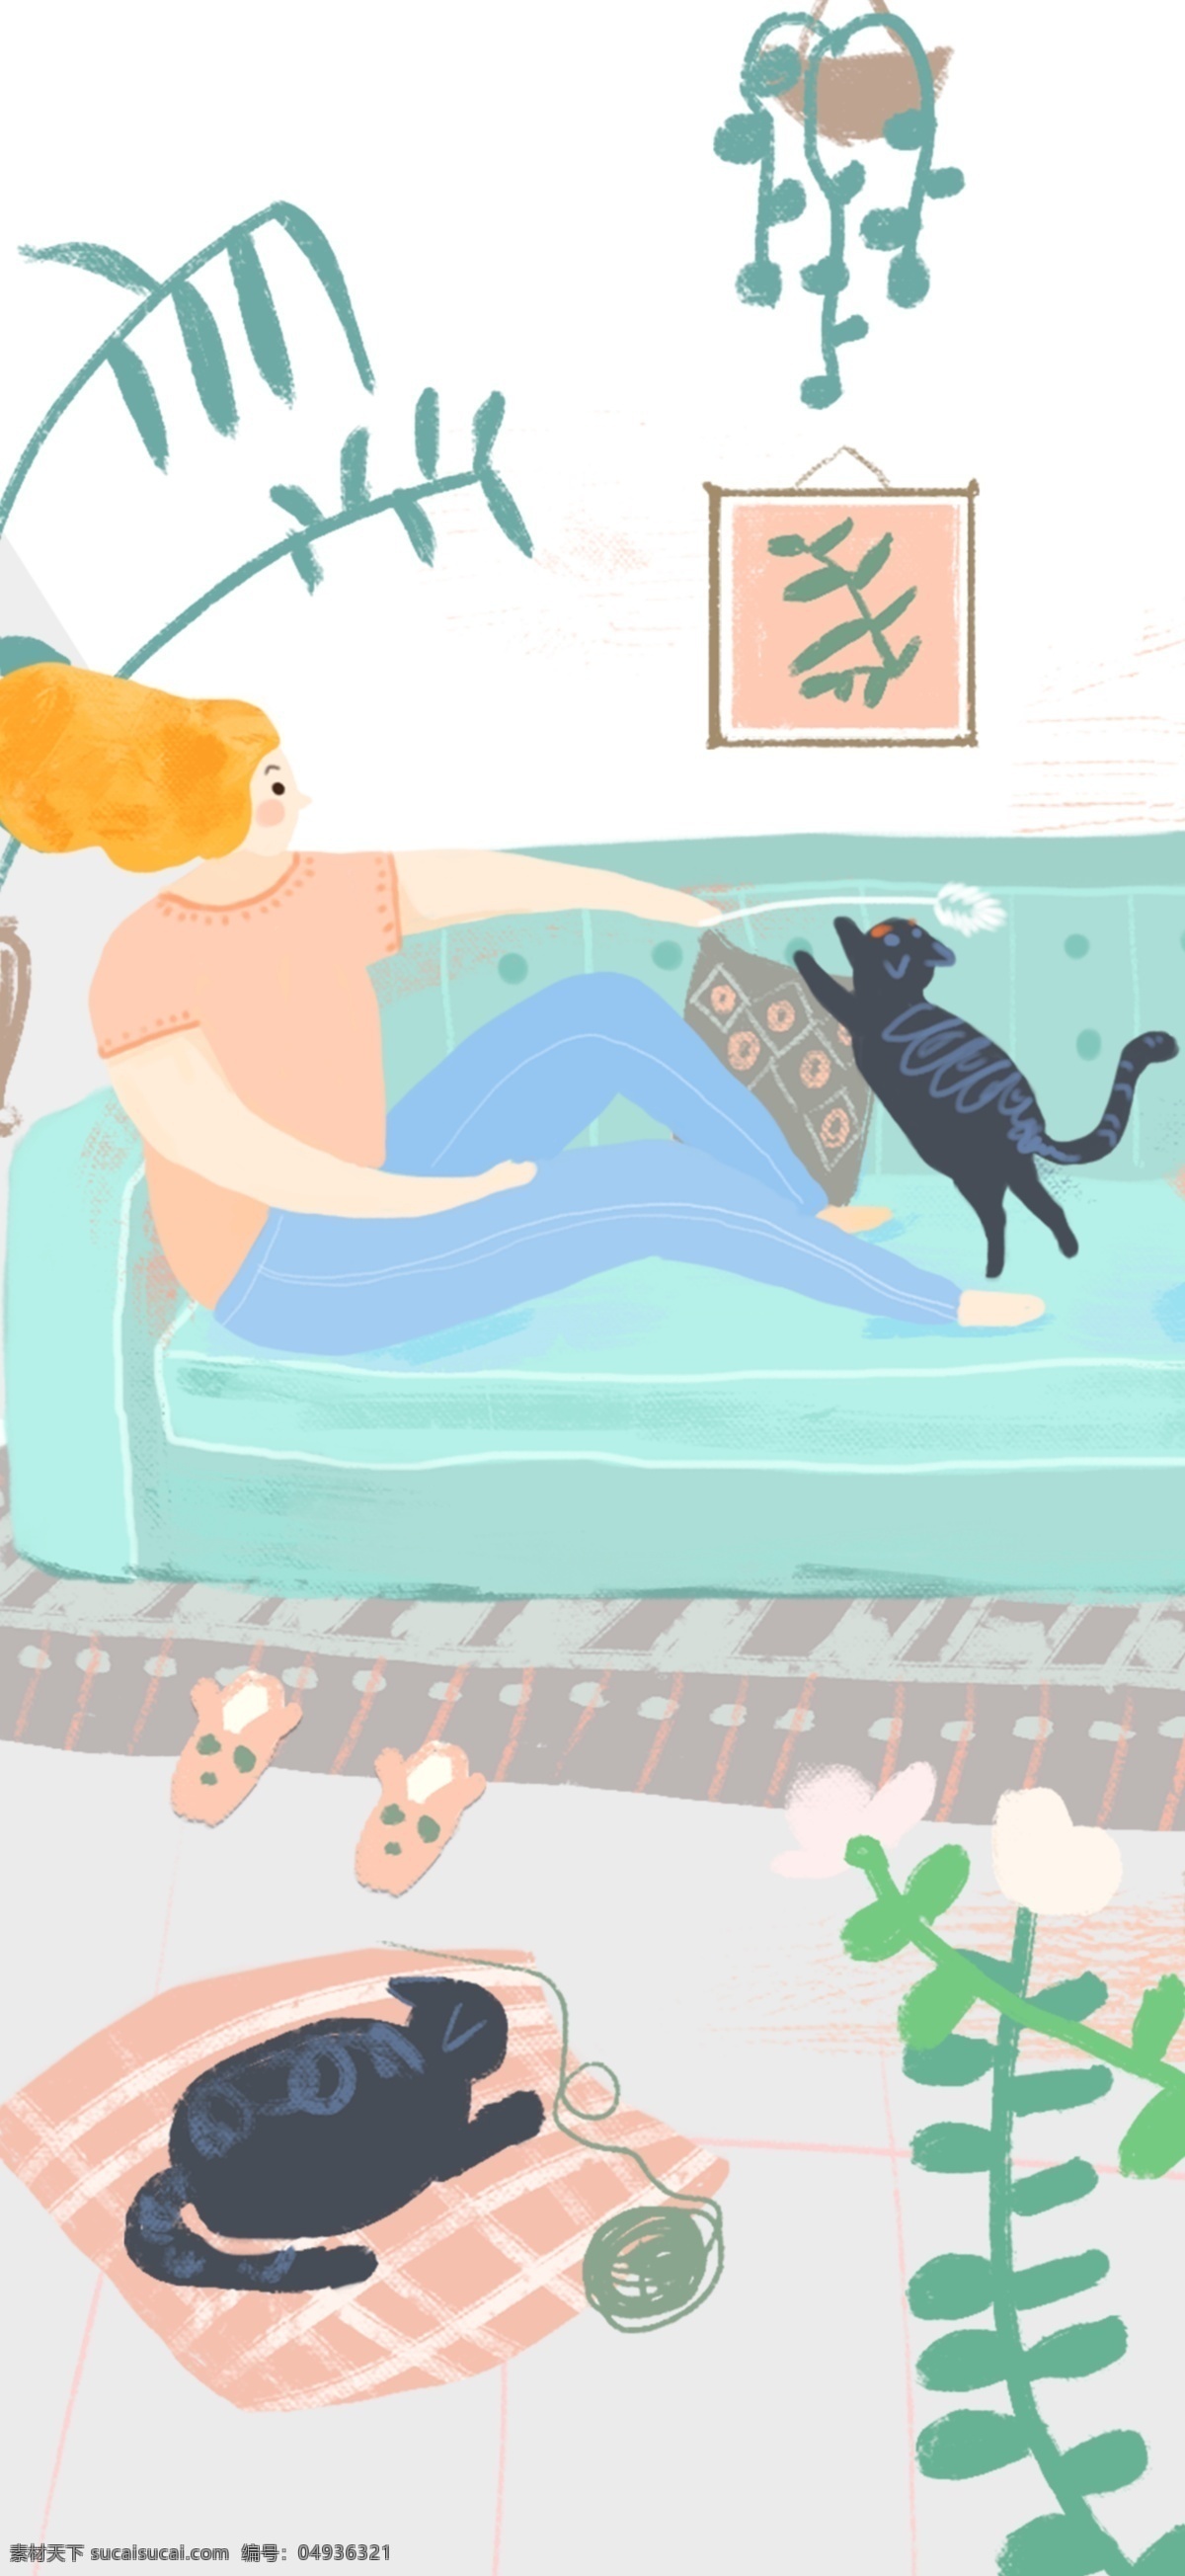 家居 生活 手绘 插画 家具 小清新 广告 方式 小资 安逸 猫 植物 海报